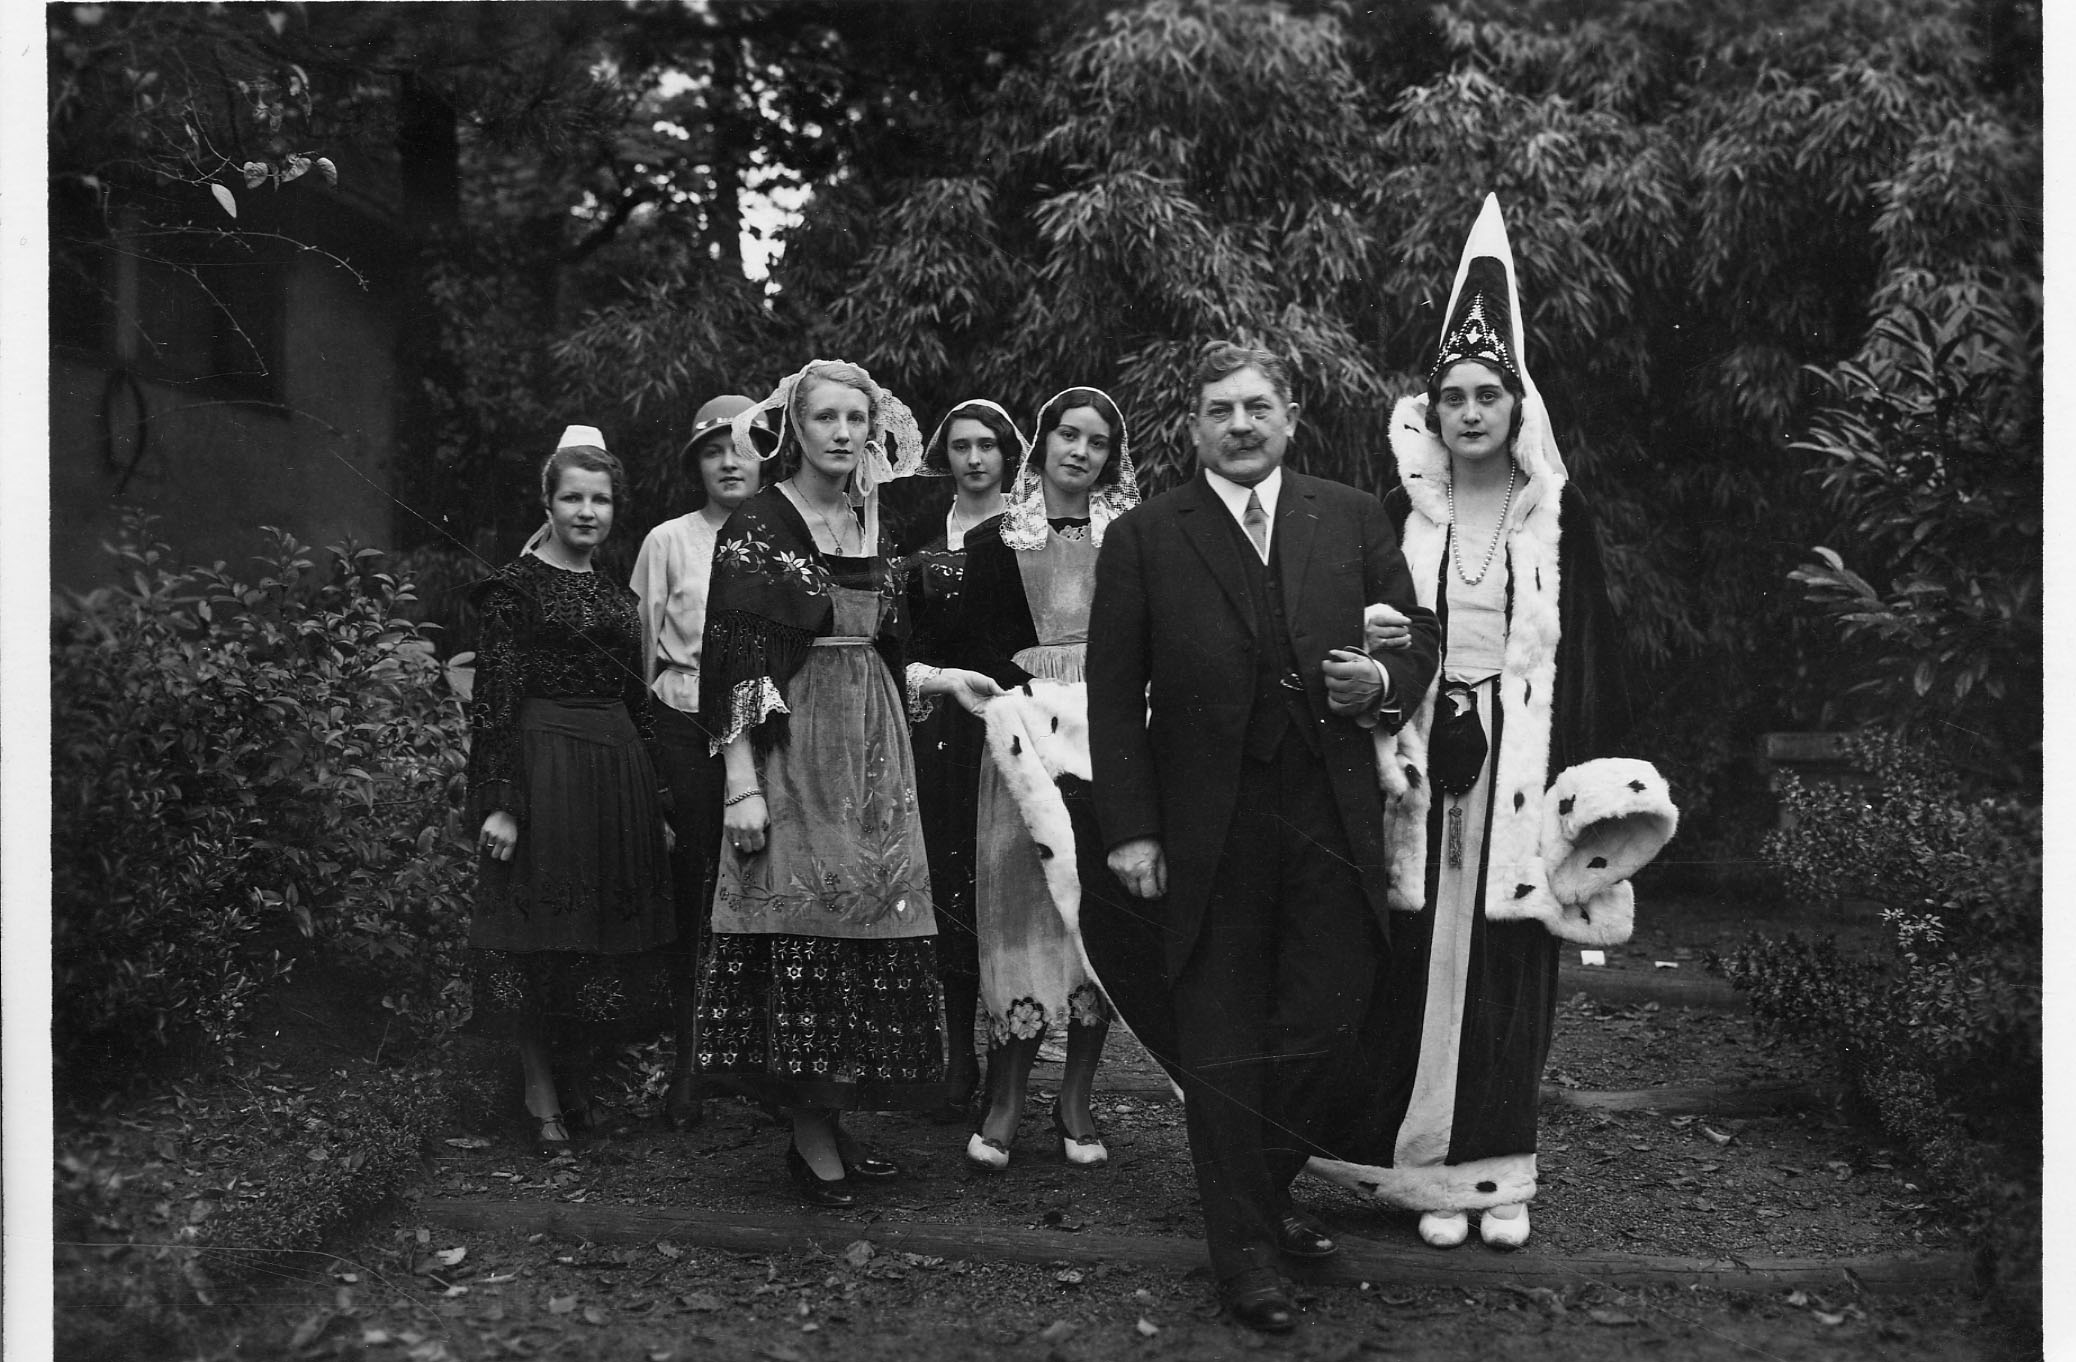 Le président Edouard Herriot au bras d'une jeune fille en costume d' Anne de Bretagne, et entouré de jeunes filles en costumes traditionnels bretons représentant les différentes régions (26Fi316)